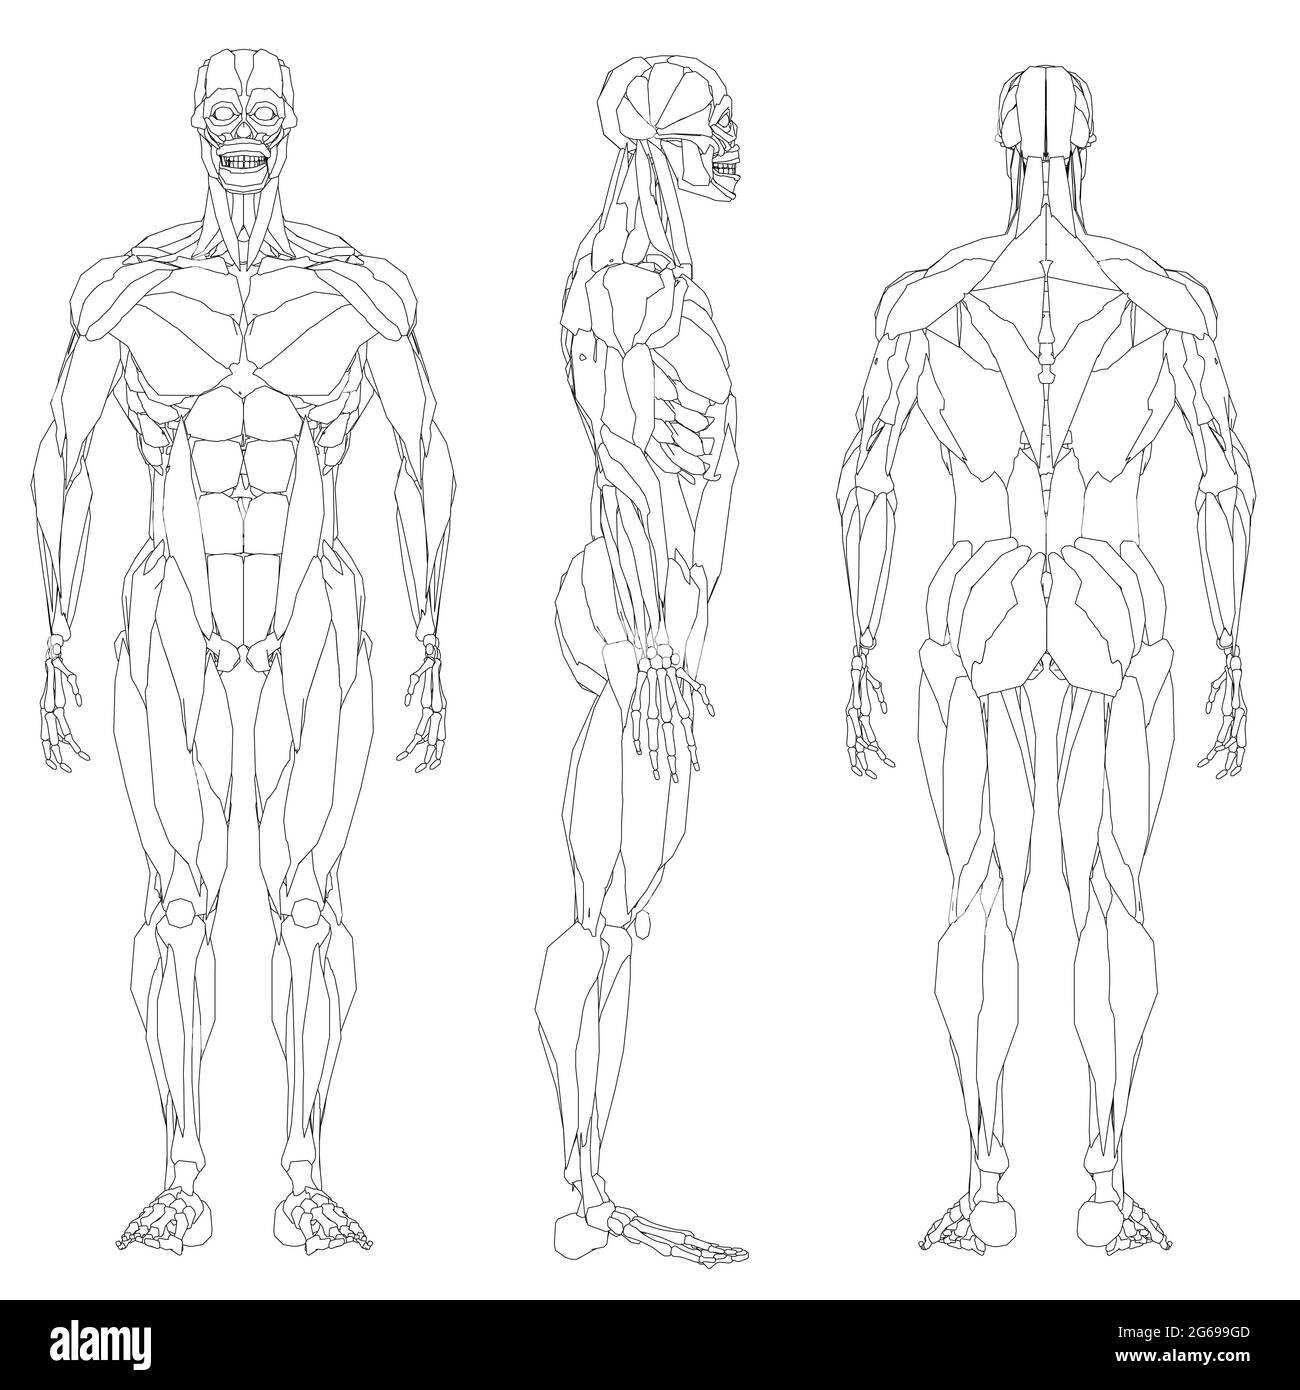 Défini avec le contour de la musculature humaine isolée sur fond blanc. Vues avant, latérale et arrière. Illustration vectorielle. Illustration de Vecteur